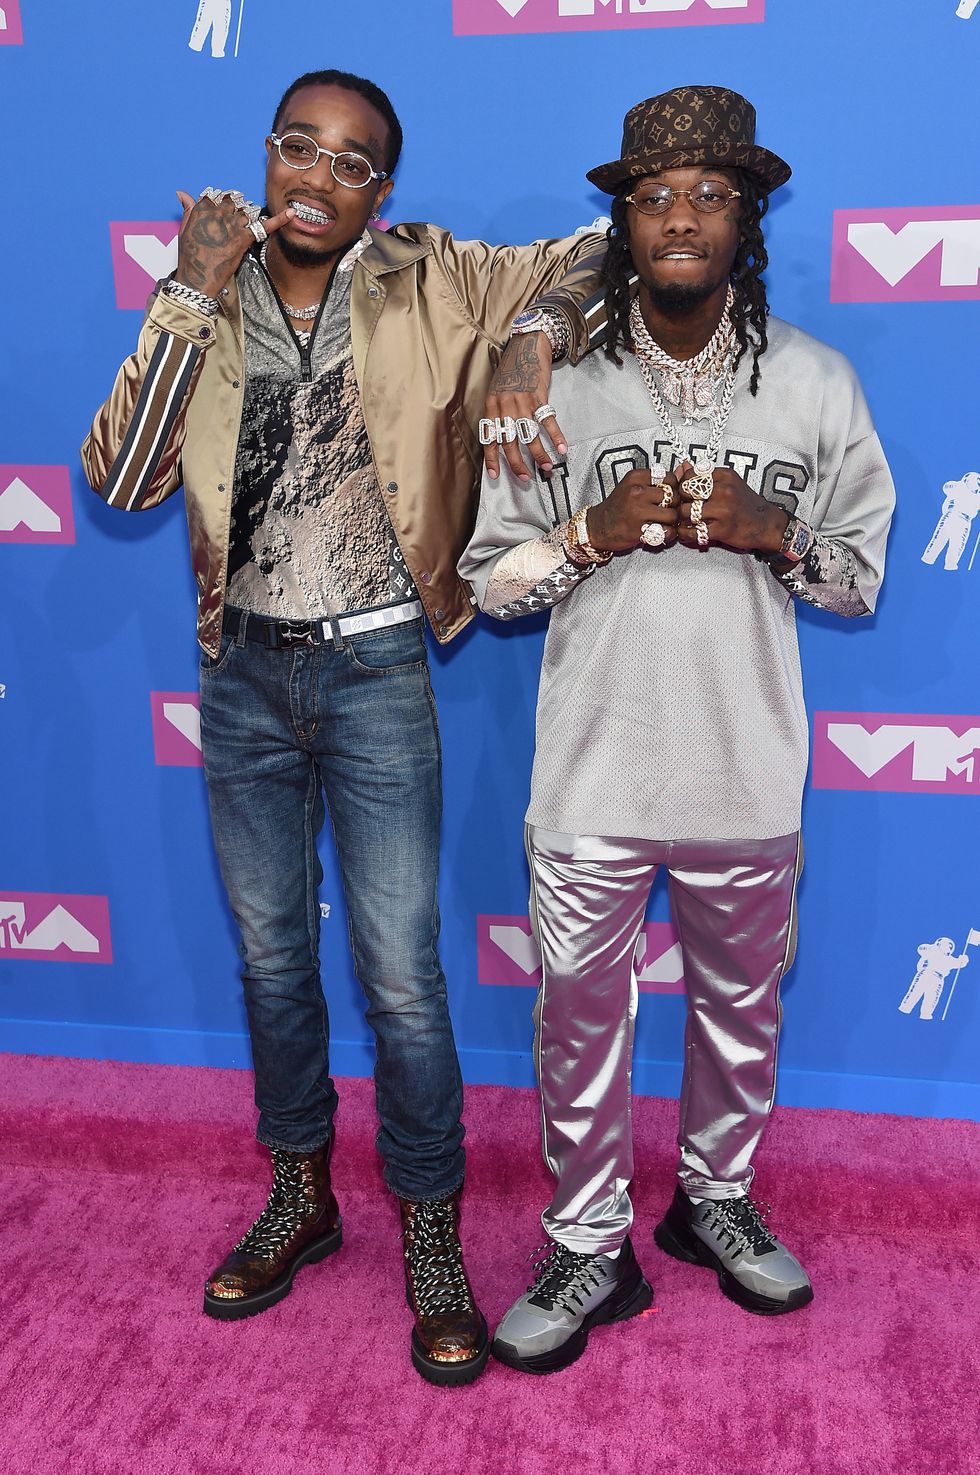 Hai chàng rapper Quavo và Offset nổi bật trên thảm đỏ VMAs 2018 với trang phục mang đậm chất hip hop. Ảnh: ELLE USA